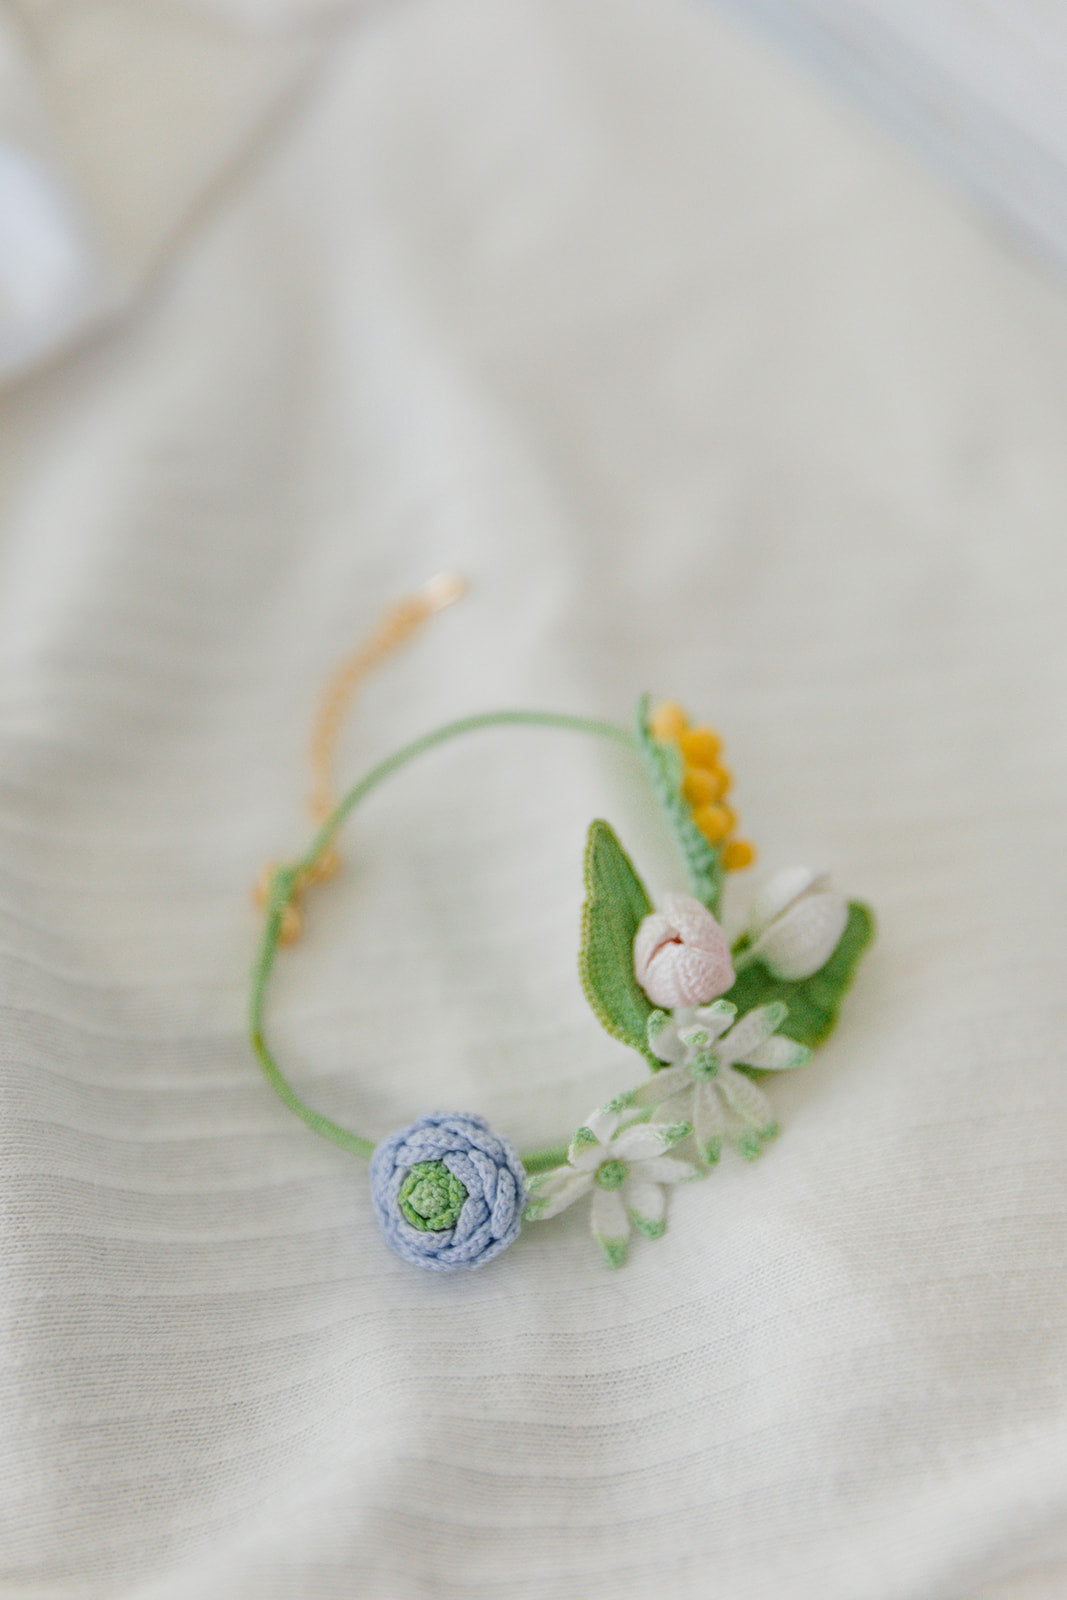 Microcrochet Spring Flower Bracelet